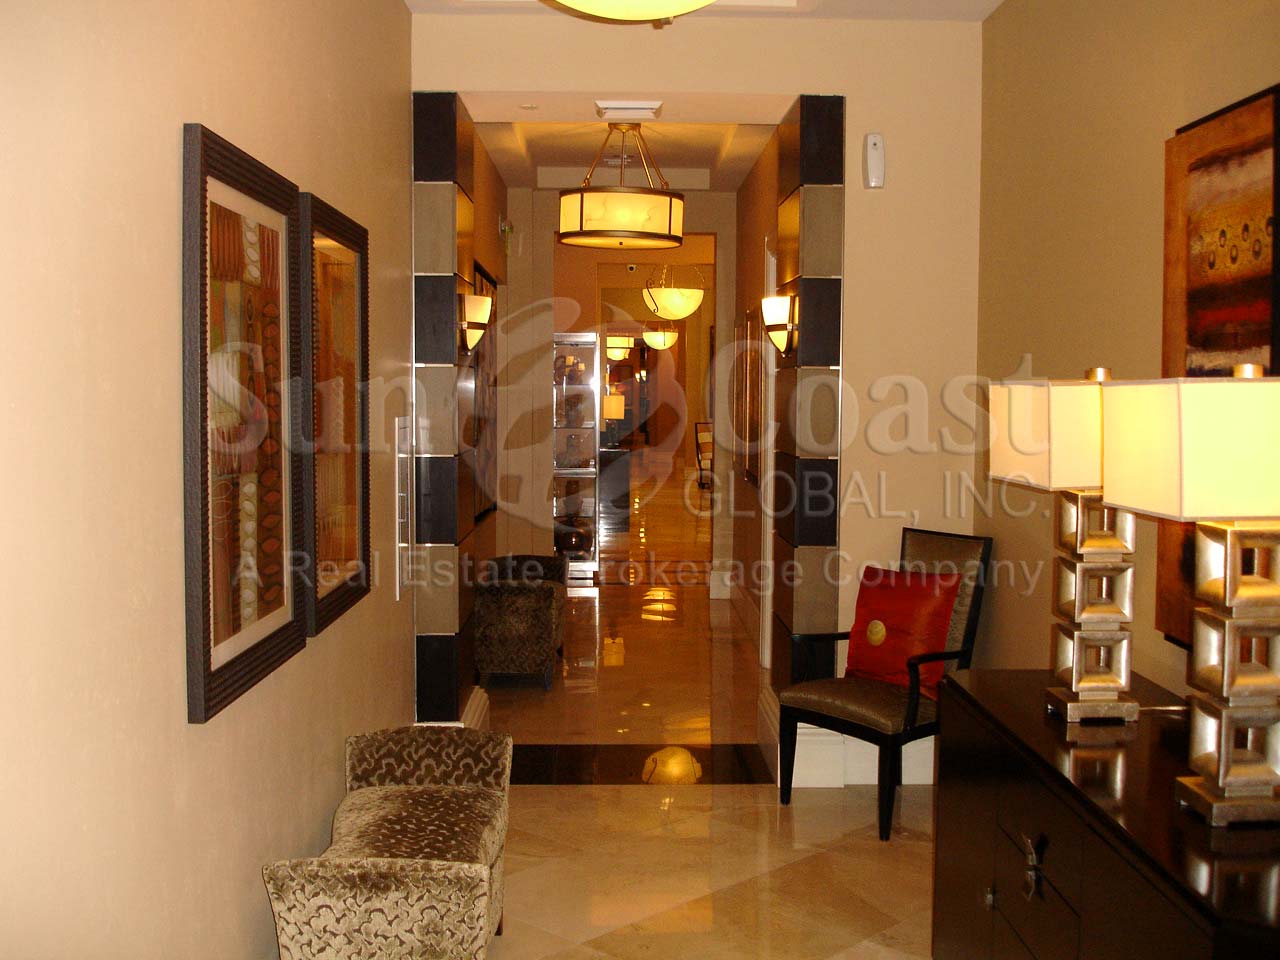 Serano Indoor Hallway in the Condominium 